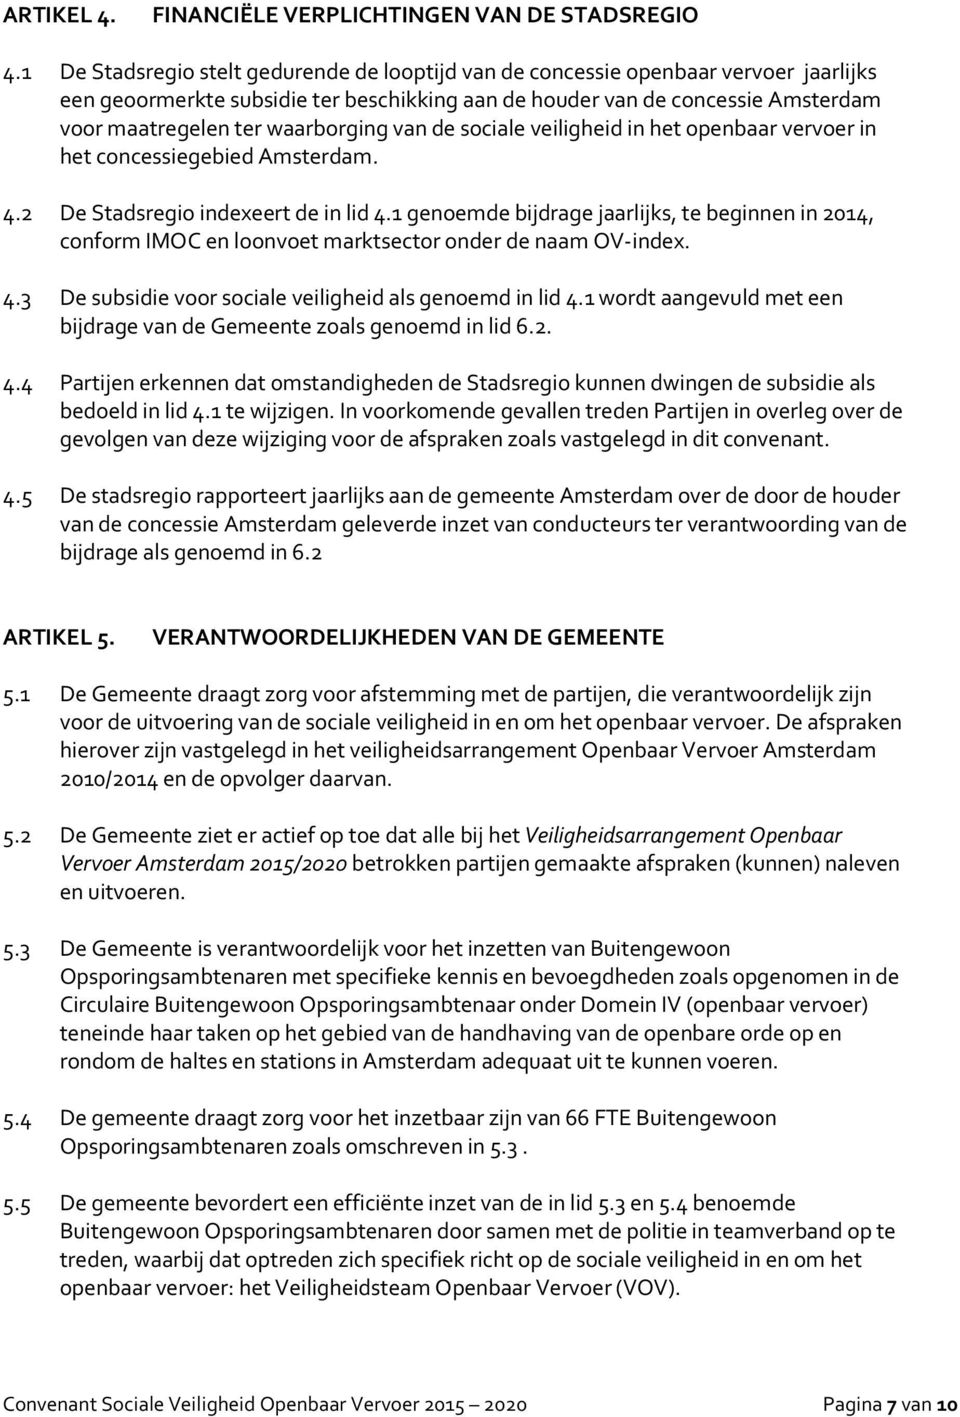 waarborging van de sociale veiligheid in het openbaar vervoer in het concessiegebied Amsterdam. 4.2 De Stadsregio indexeert de in lid 4.